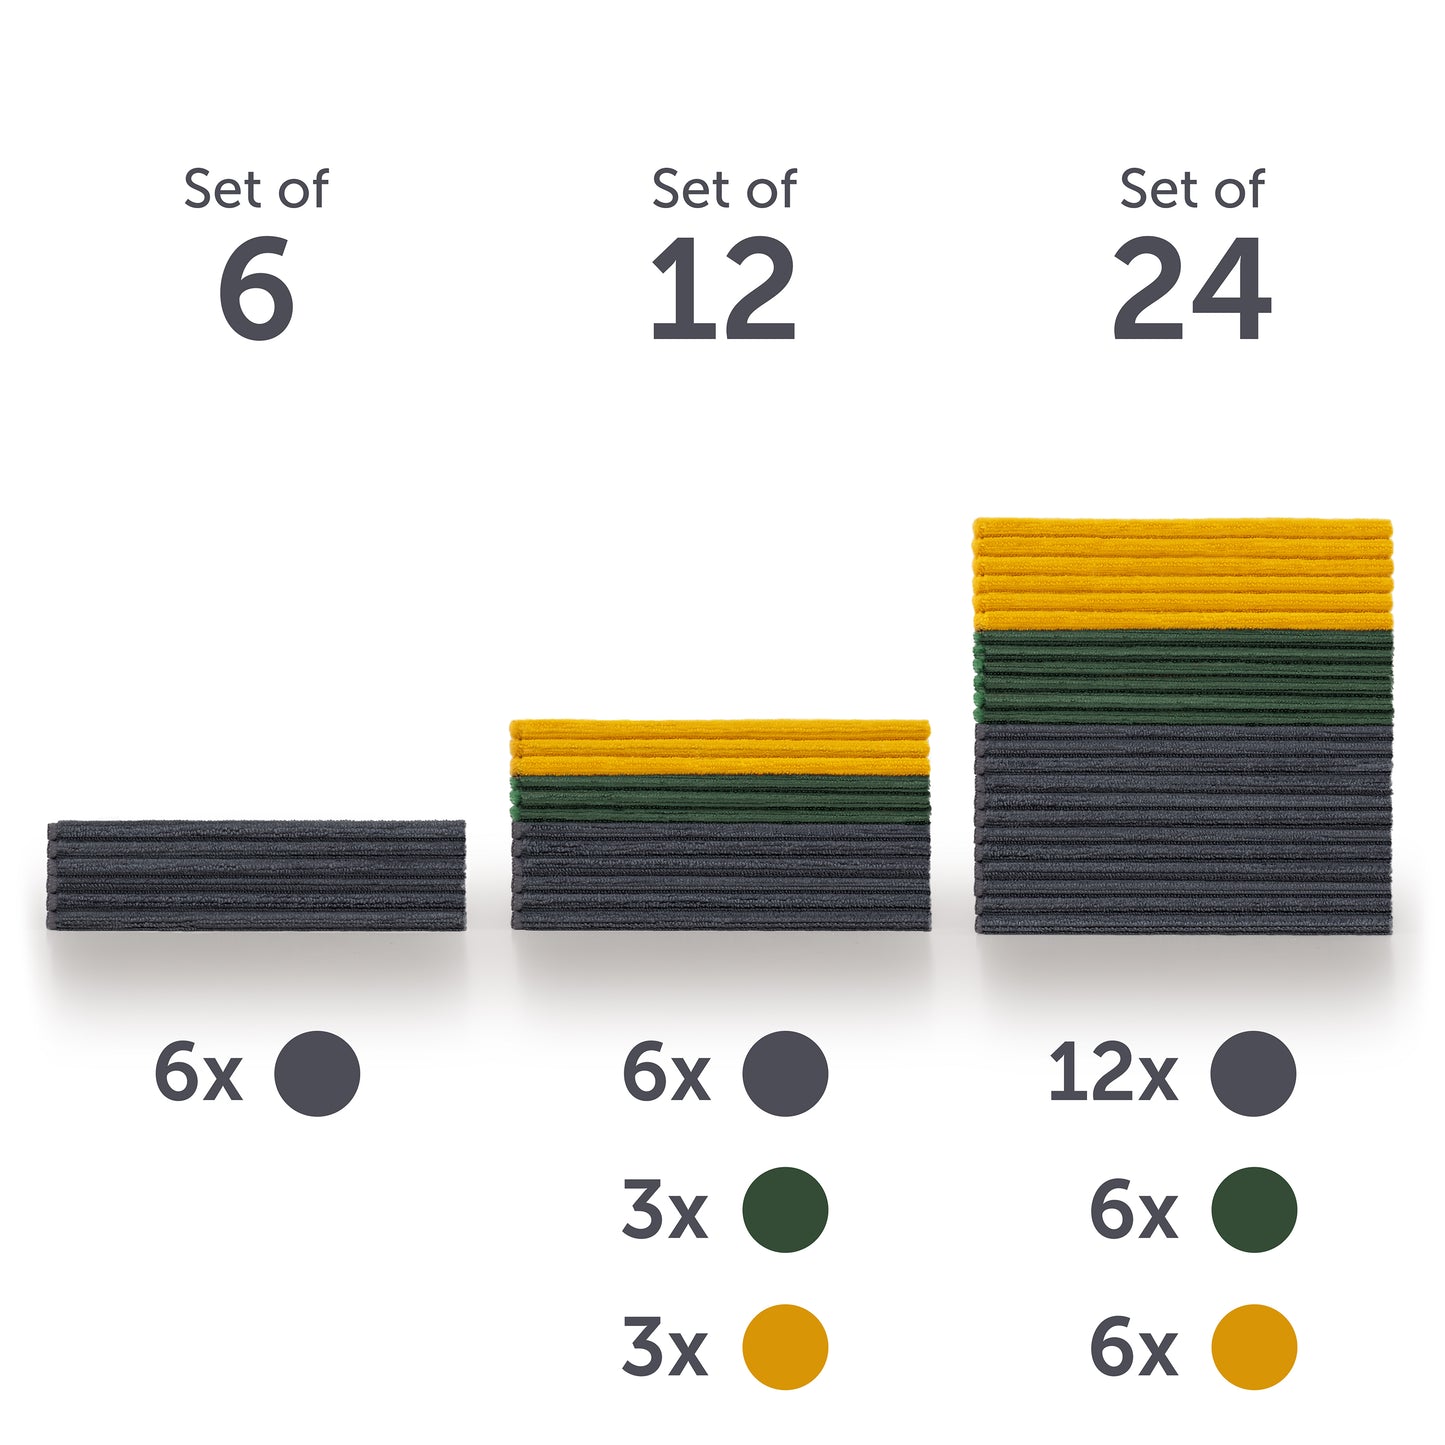 Übersicht von drei Mikrofasertuch-Sets in unterschiedlichen Größen vor weißem Hintergrund. Links ein Set von 6 in Dunkelgrau, in der Mitte ein Set von 12 in Dunkelgrau, Grün und Gelb, rechts ein Set von 24 in denselben Farben. Über jedem Set ist die Set-Größe '6', '12', '24' angegeben, darunter entsprechende Farbpunkte zur Anzahl-Visualisierung der Tücher pro Farbe.